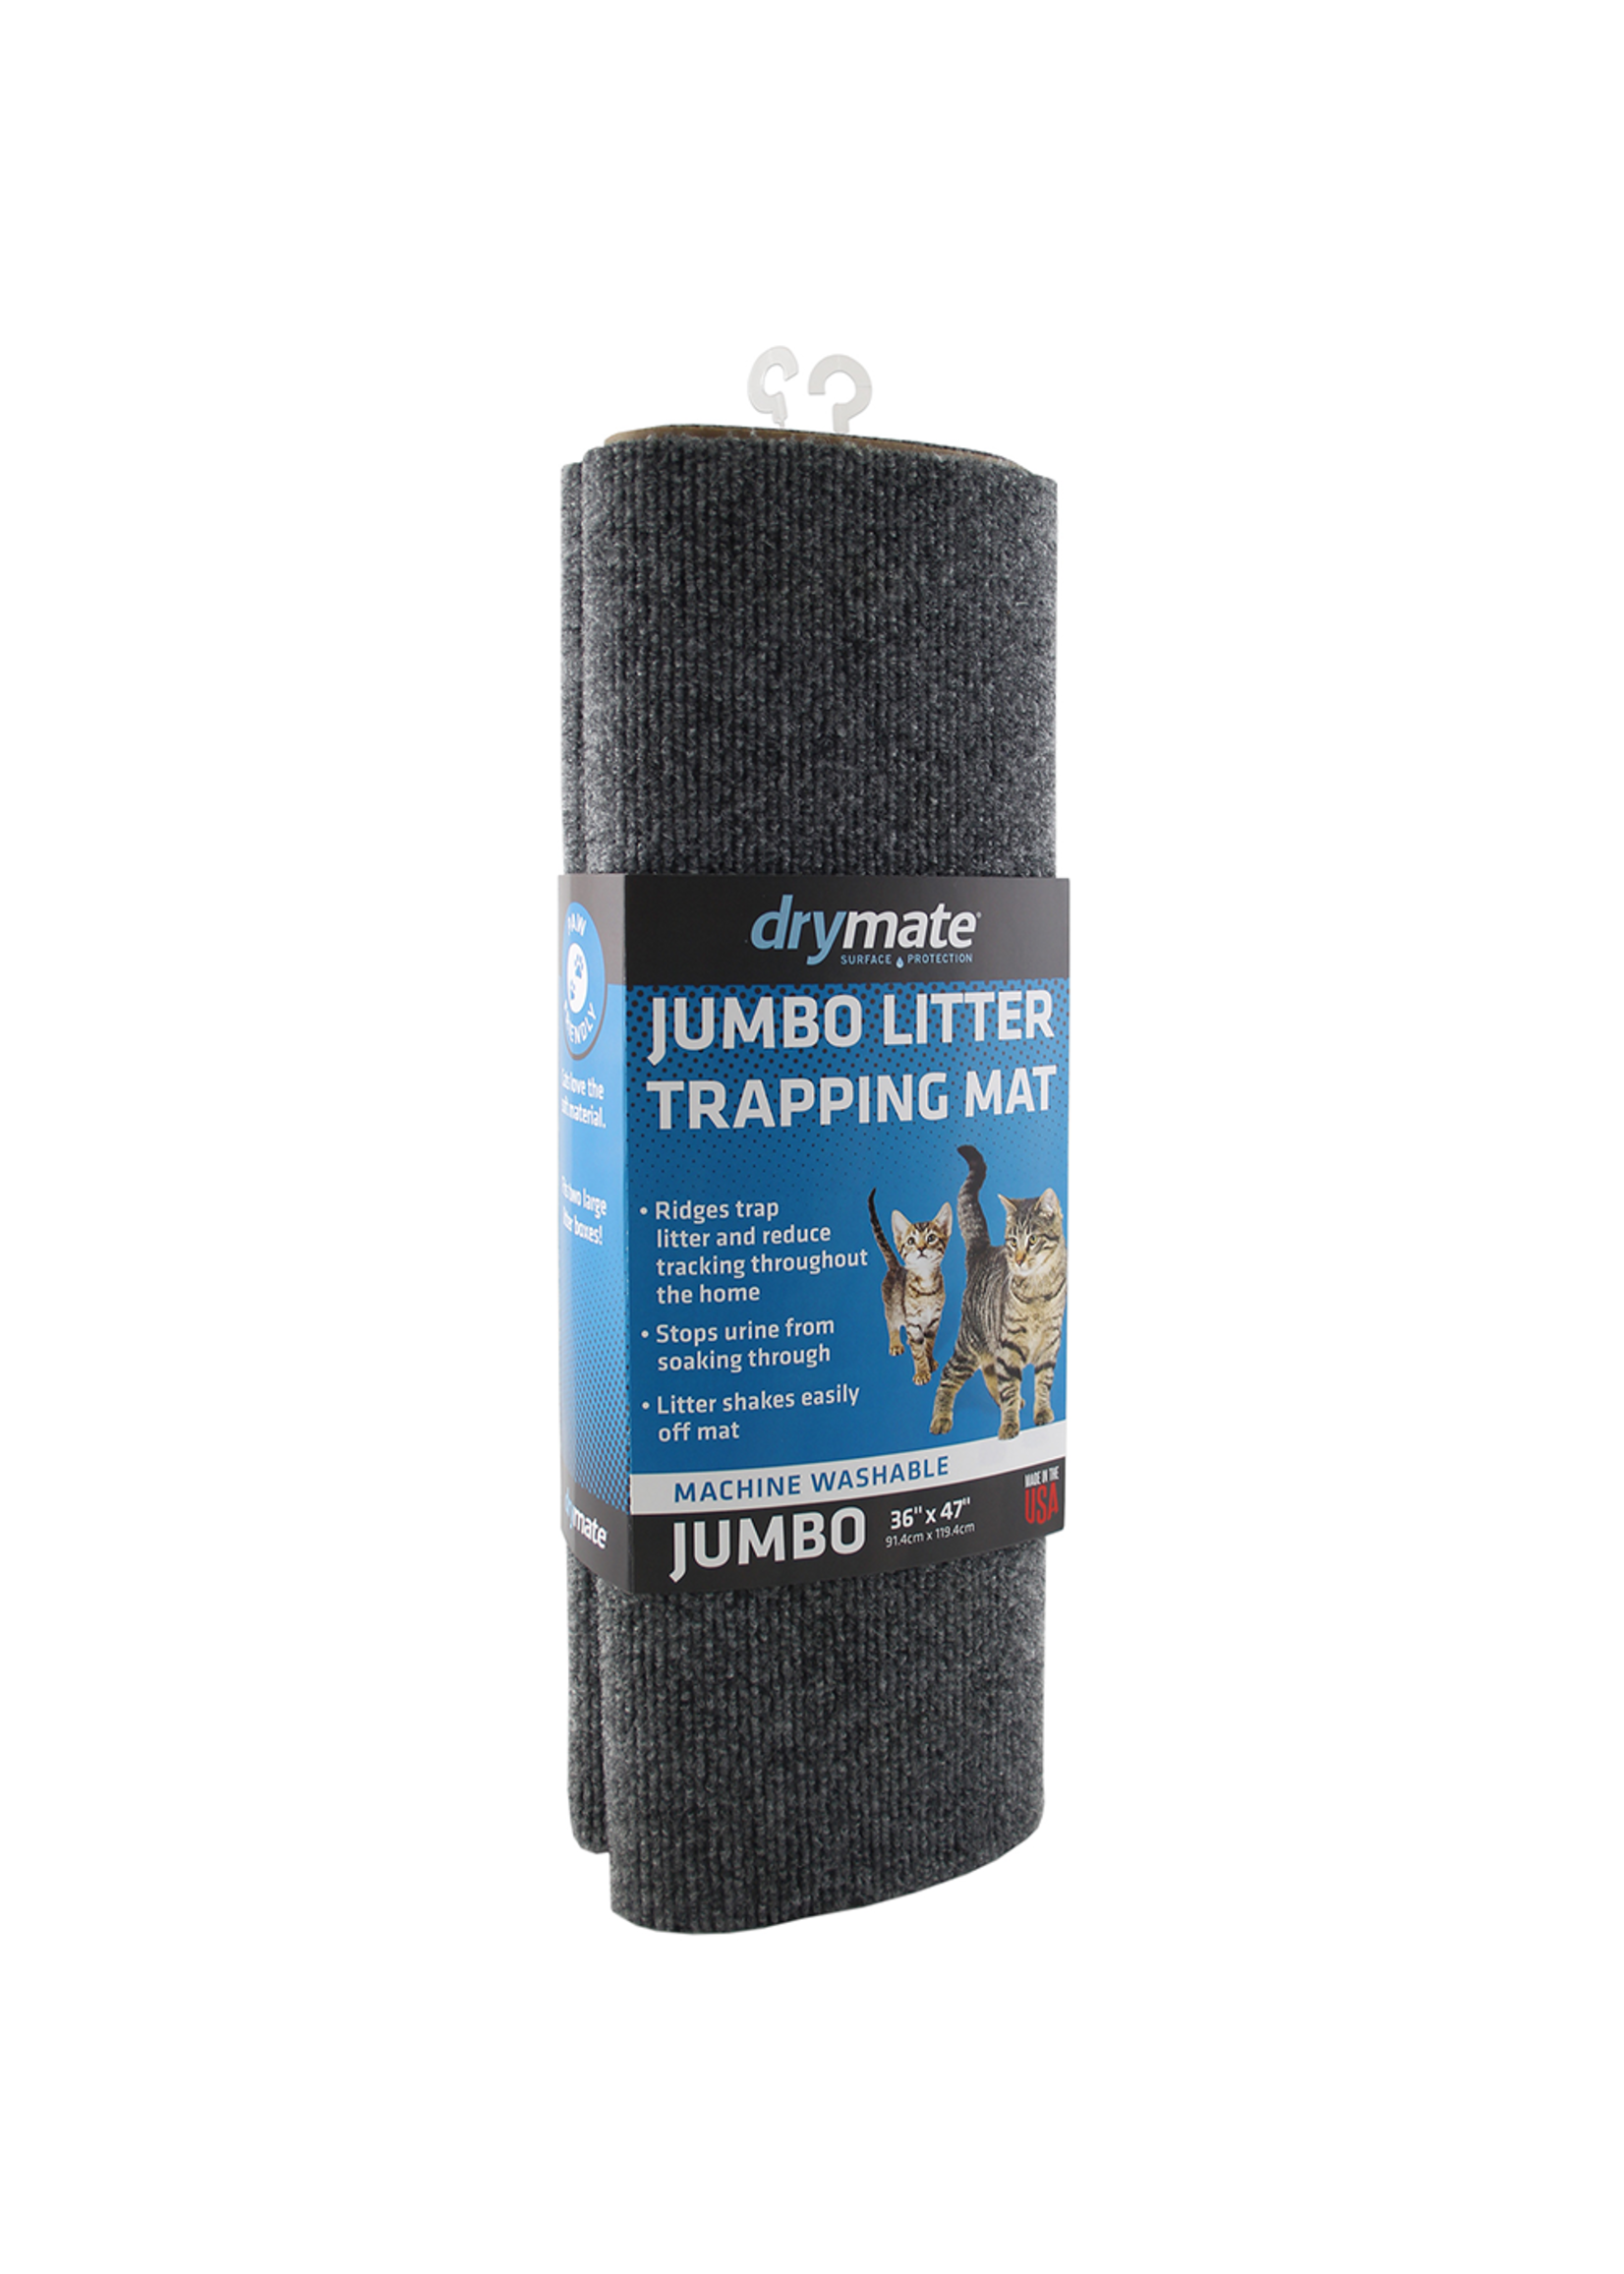 Drymate Drymate Cat Litter Trapping Mat Charcoal Jumbo 36 x 47"